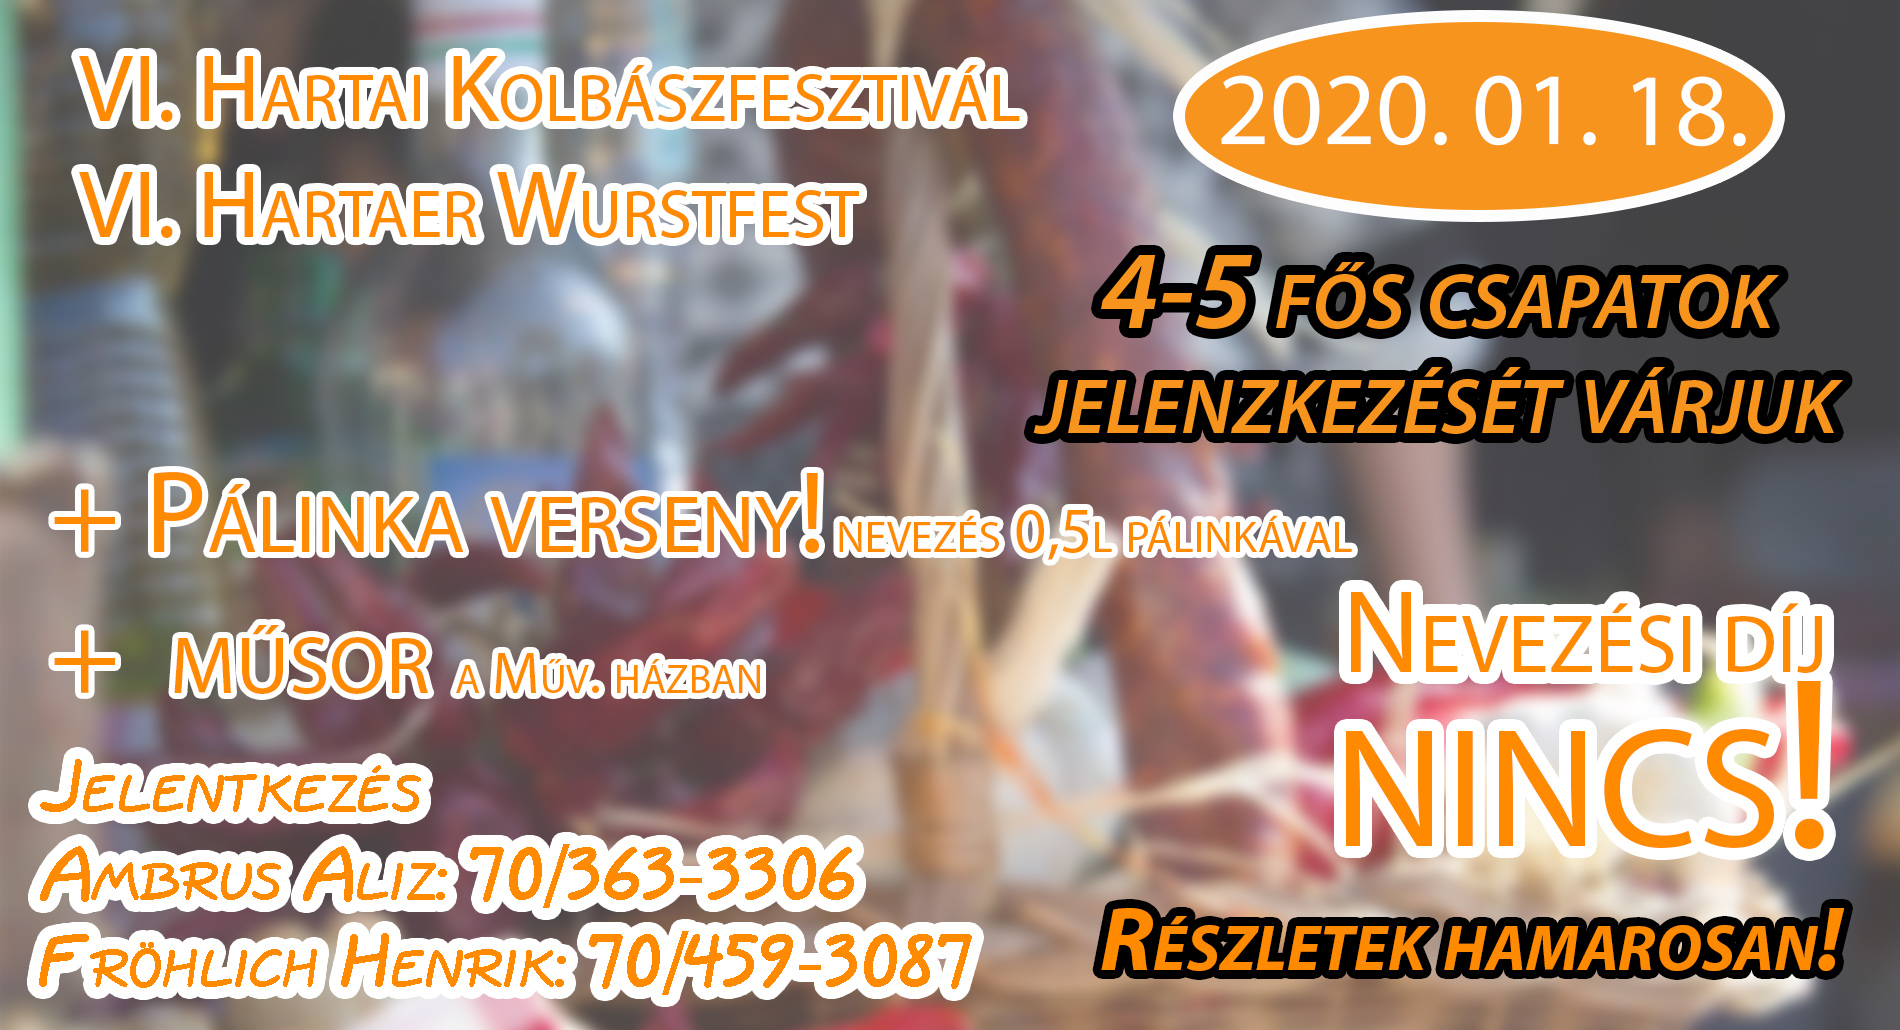 kolbaszfest felhivas 2020